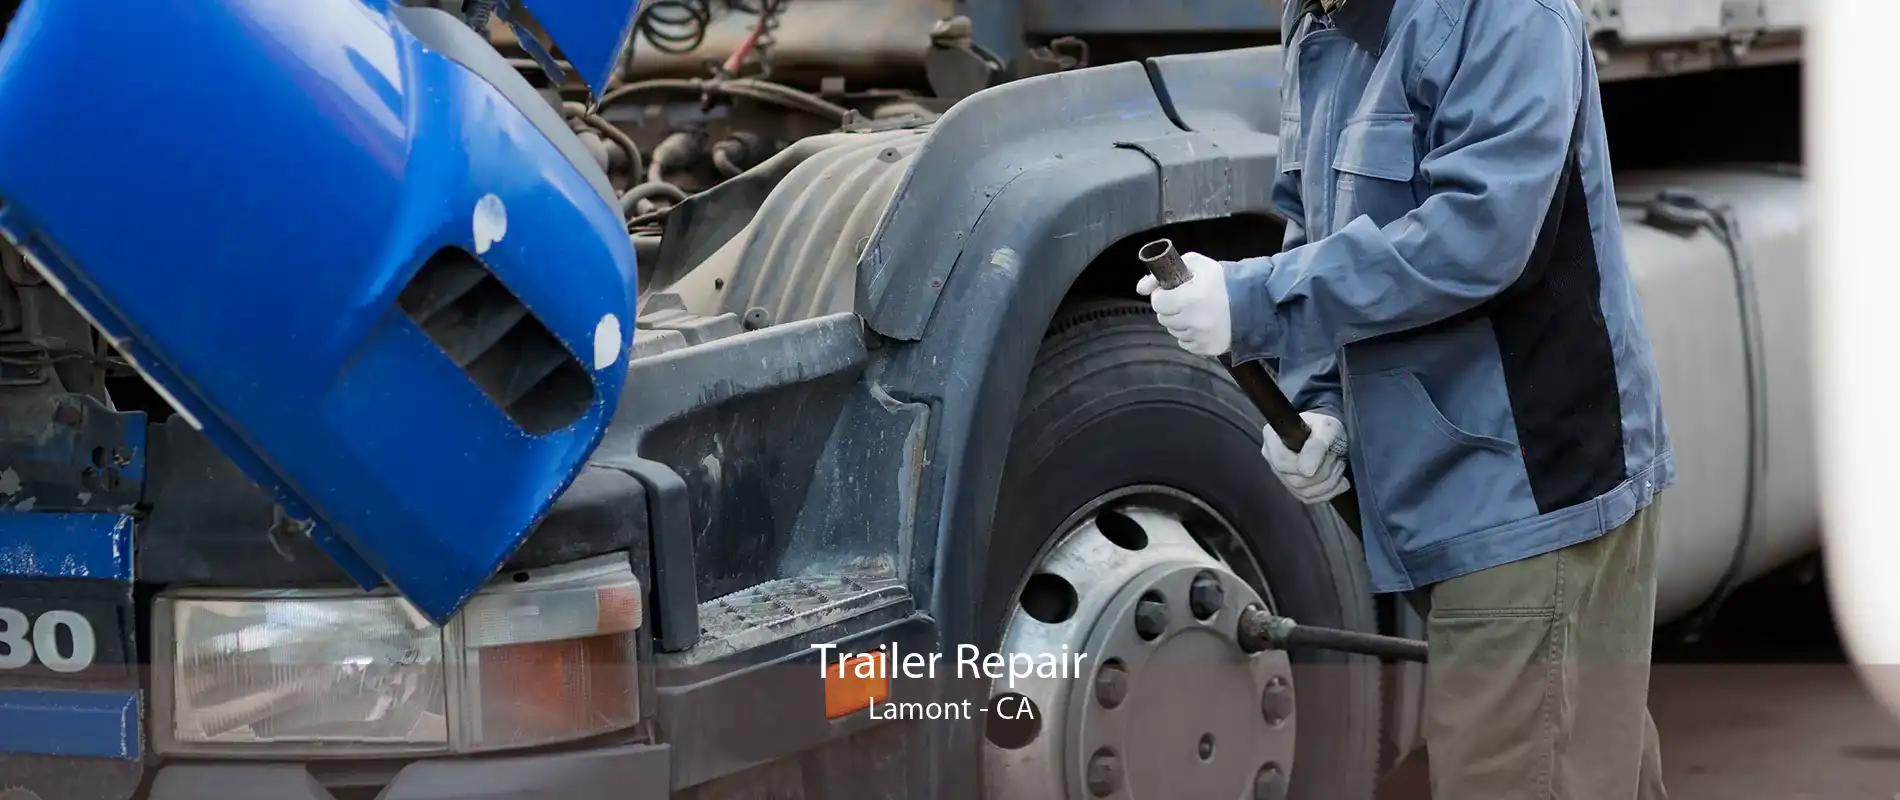 Trailer Repair Lamont - CA